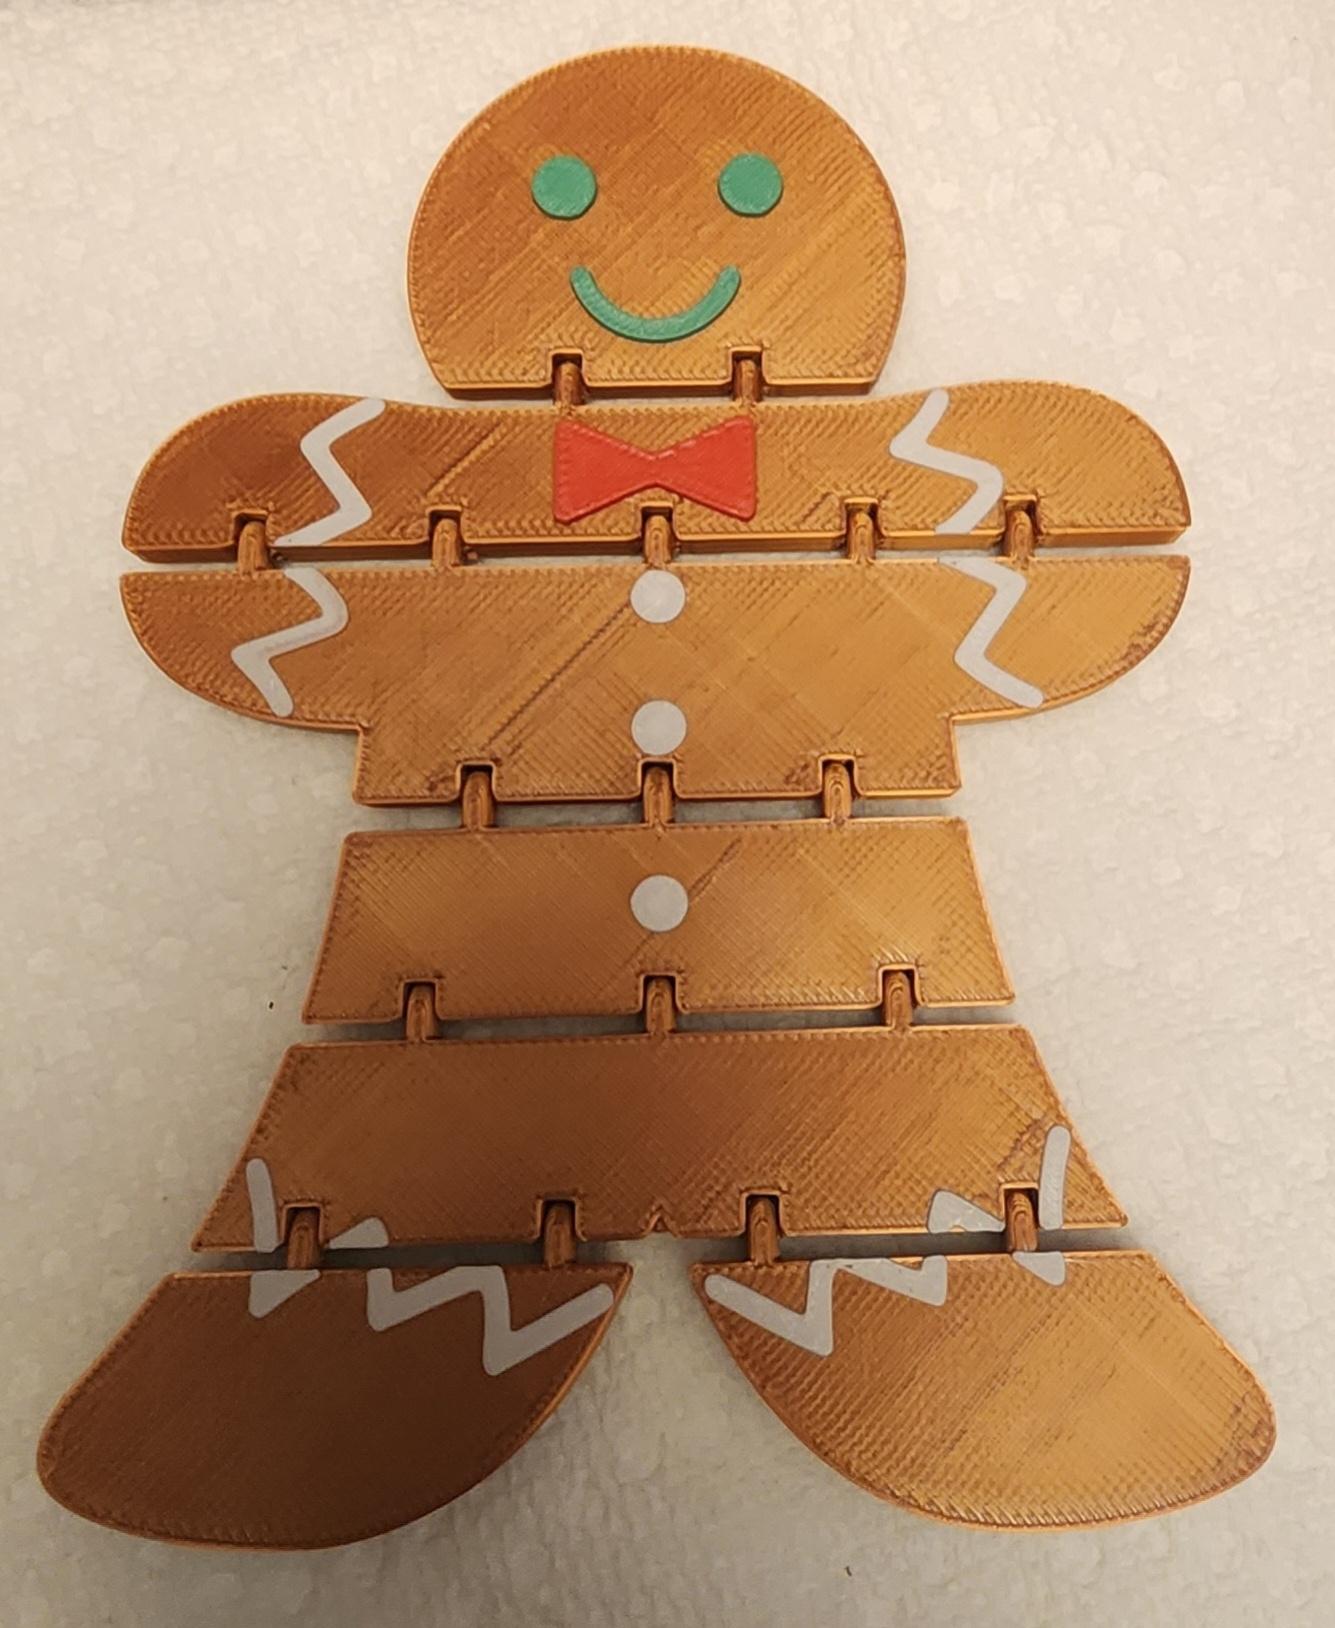 Gingerbread man flexi 3d model